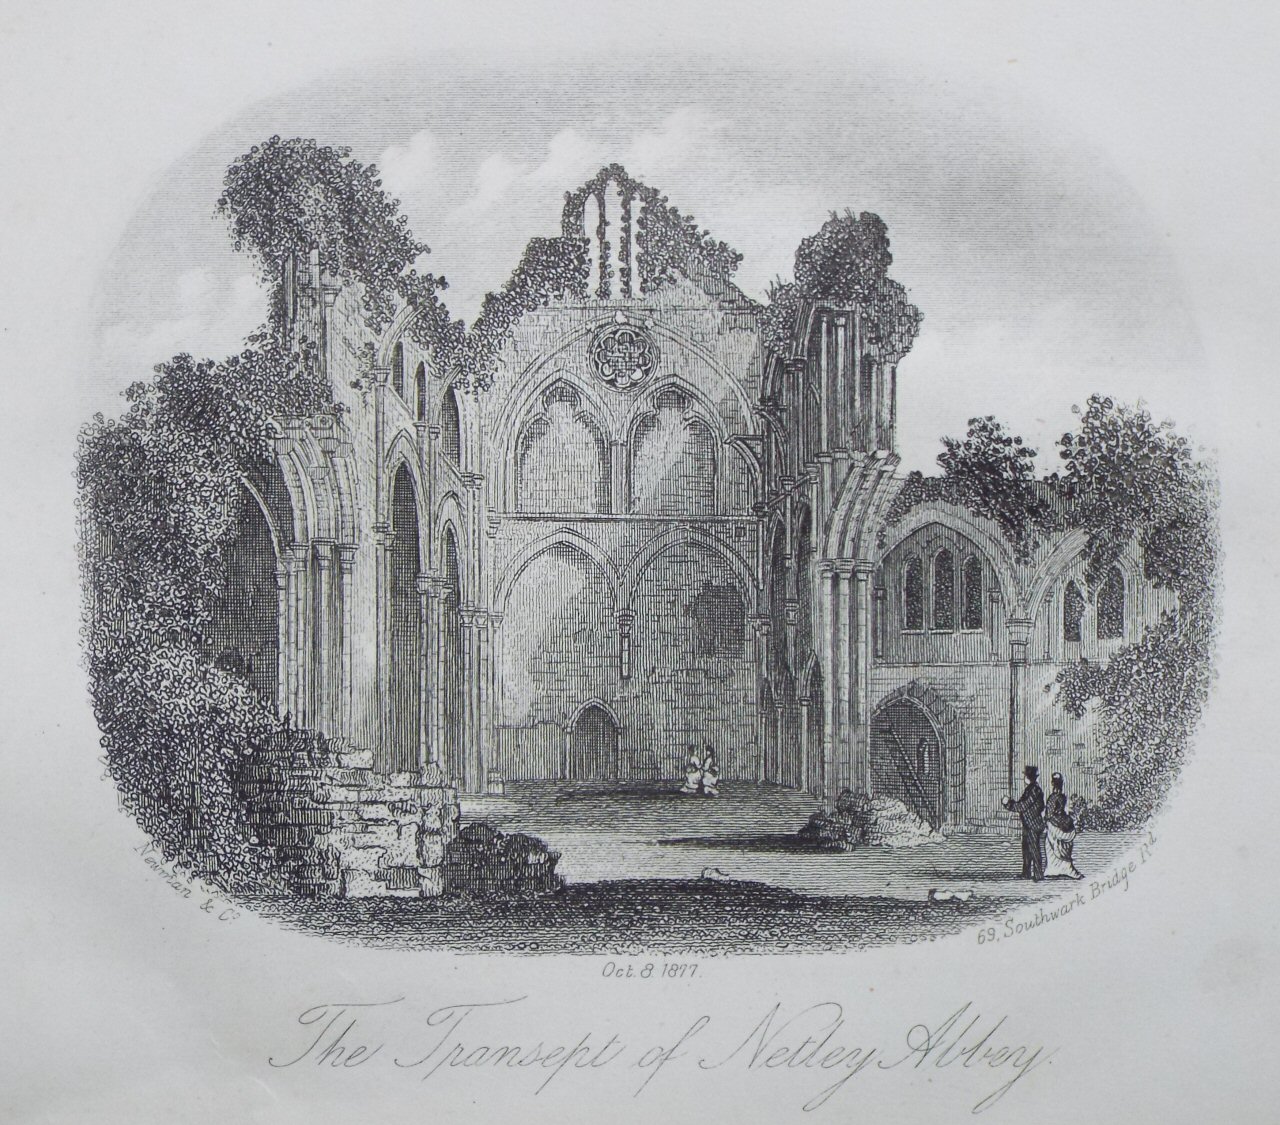 Steel Vignette - The Transept of Netley Abbey - Newman